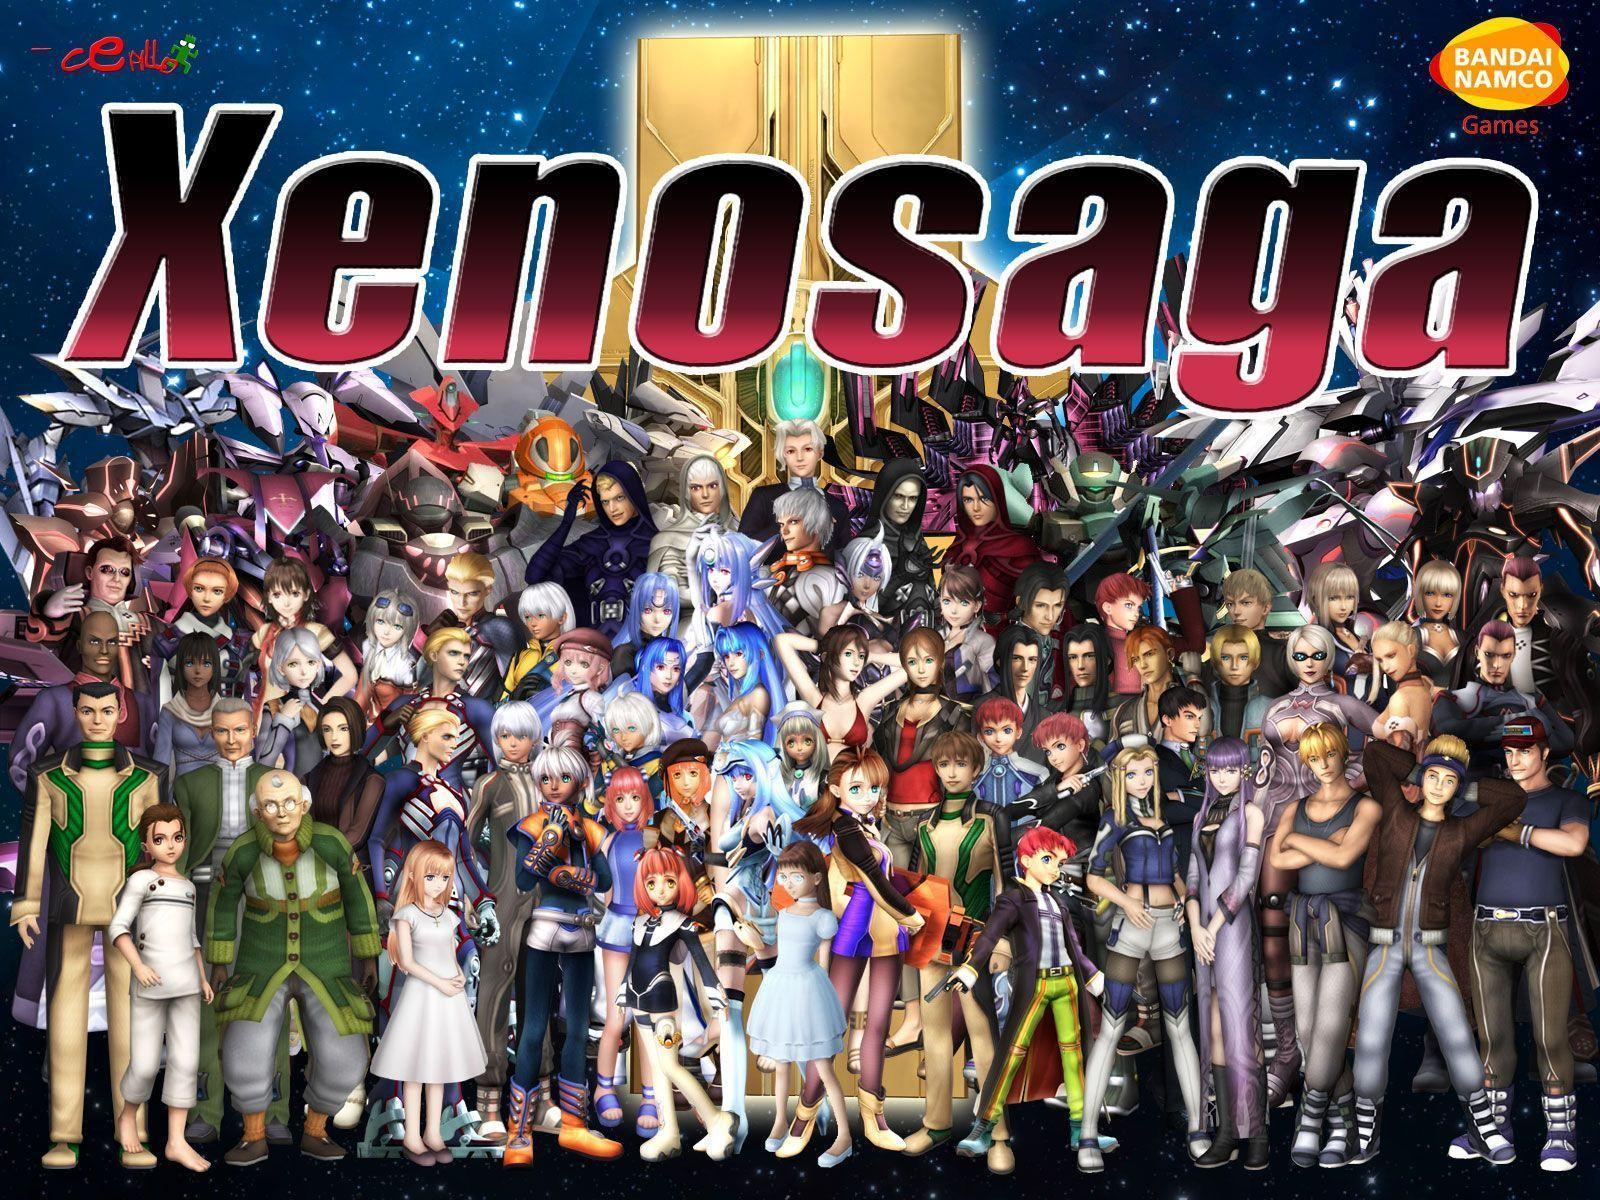 Wallpaper de Xenogears, Xenosaga, Xenoblade Chronicles y